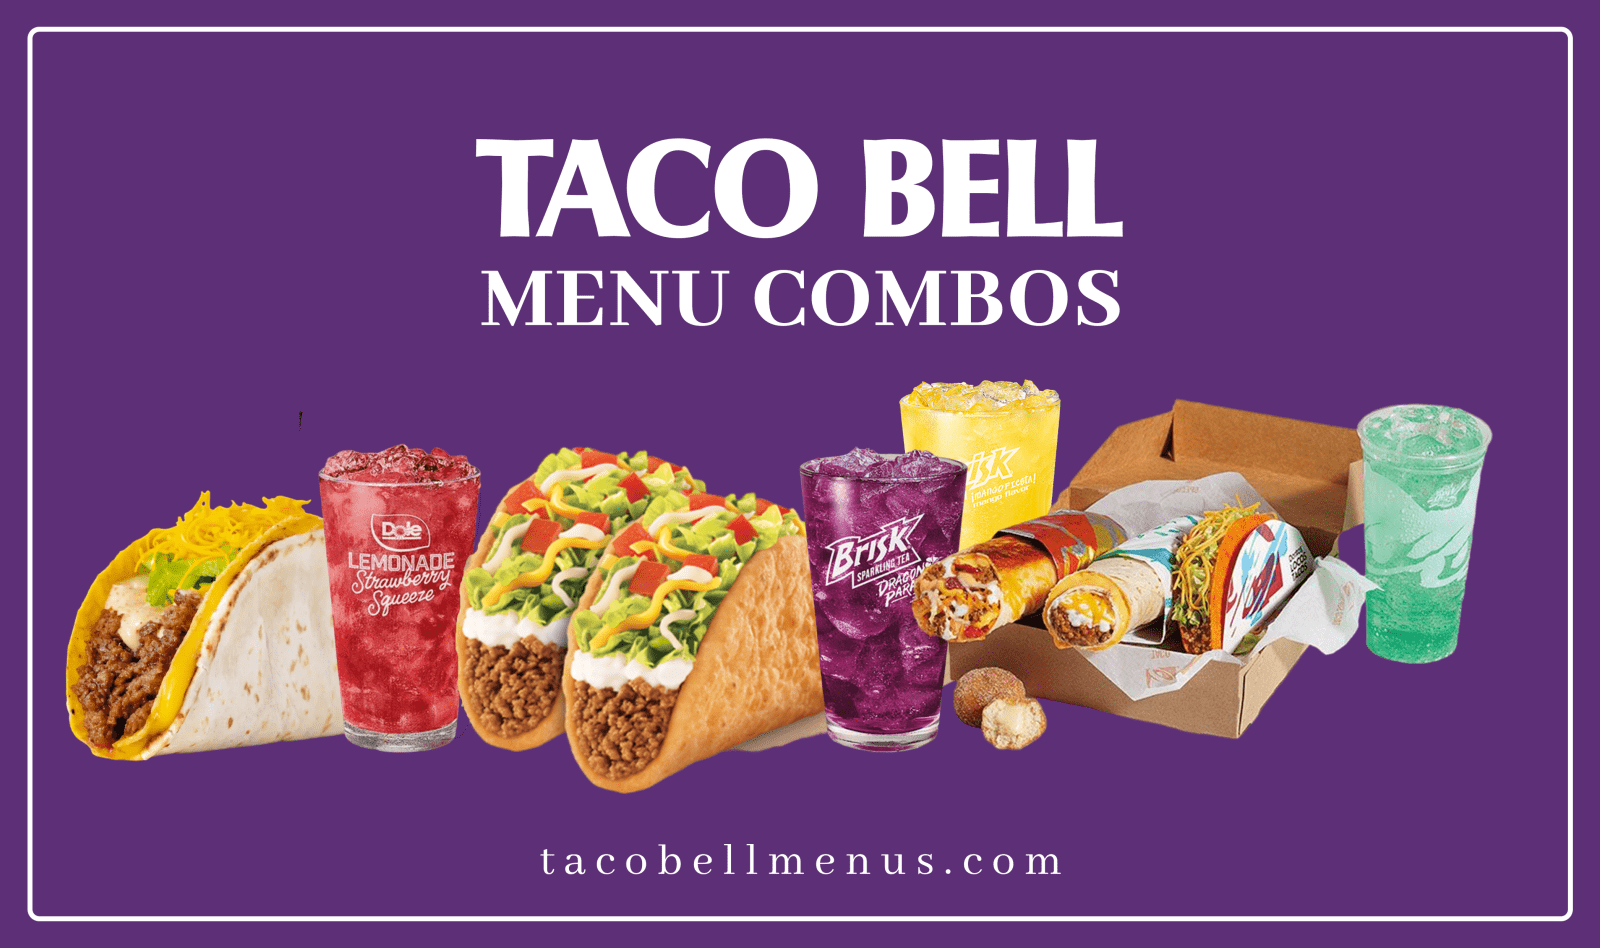 Taco Bell Menu Combos, Taco Bell Menu Combos 2023, taco bell menu, Taco Bell Combos menu price, Taco Bell Menu Combos Calories, Chalupa Cravings Box, Crunchwrap Supreme Combo, Tacos Combo, Tacos Supreme Combo,